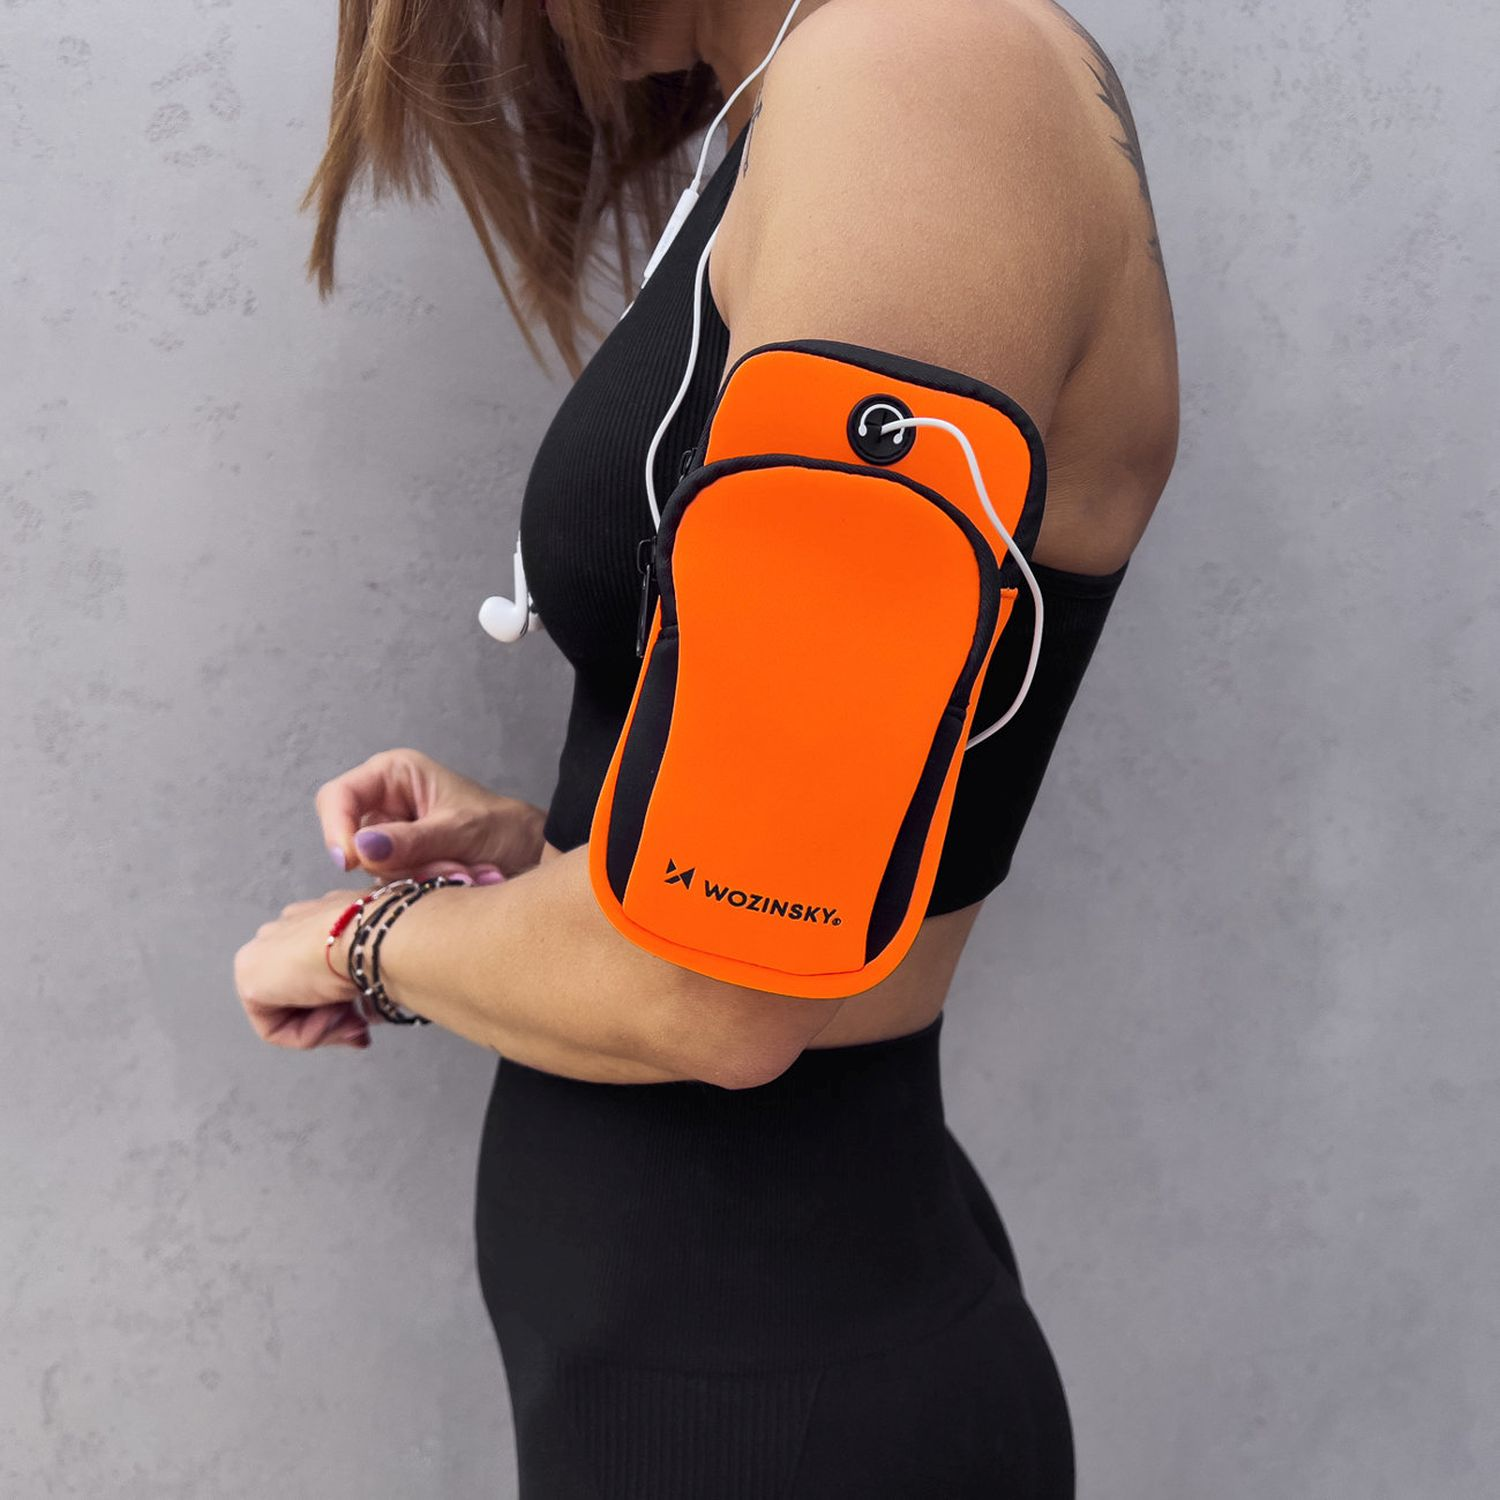 WOZINSKY Laufband Handys Armband, Universal, Orange Armtasche, für Universal